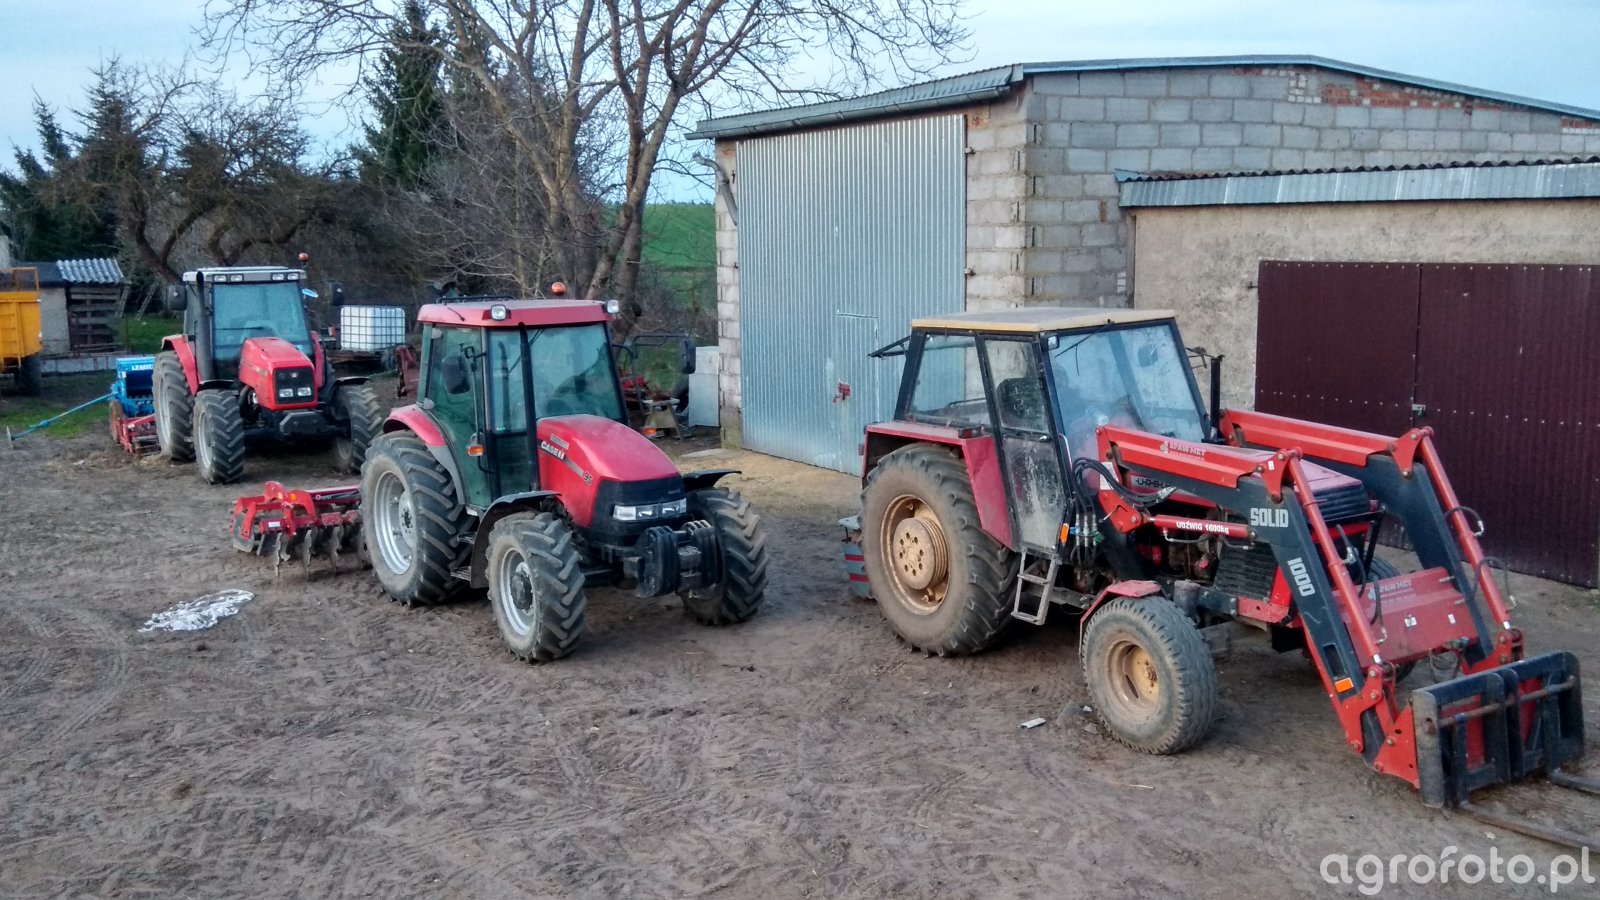 Obraz traktor Red Power id725144 Galeria rolnicza agrofoto